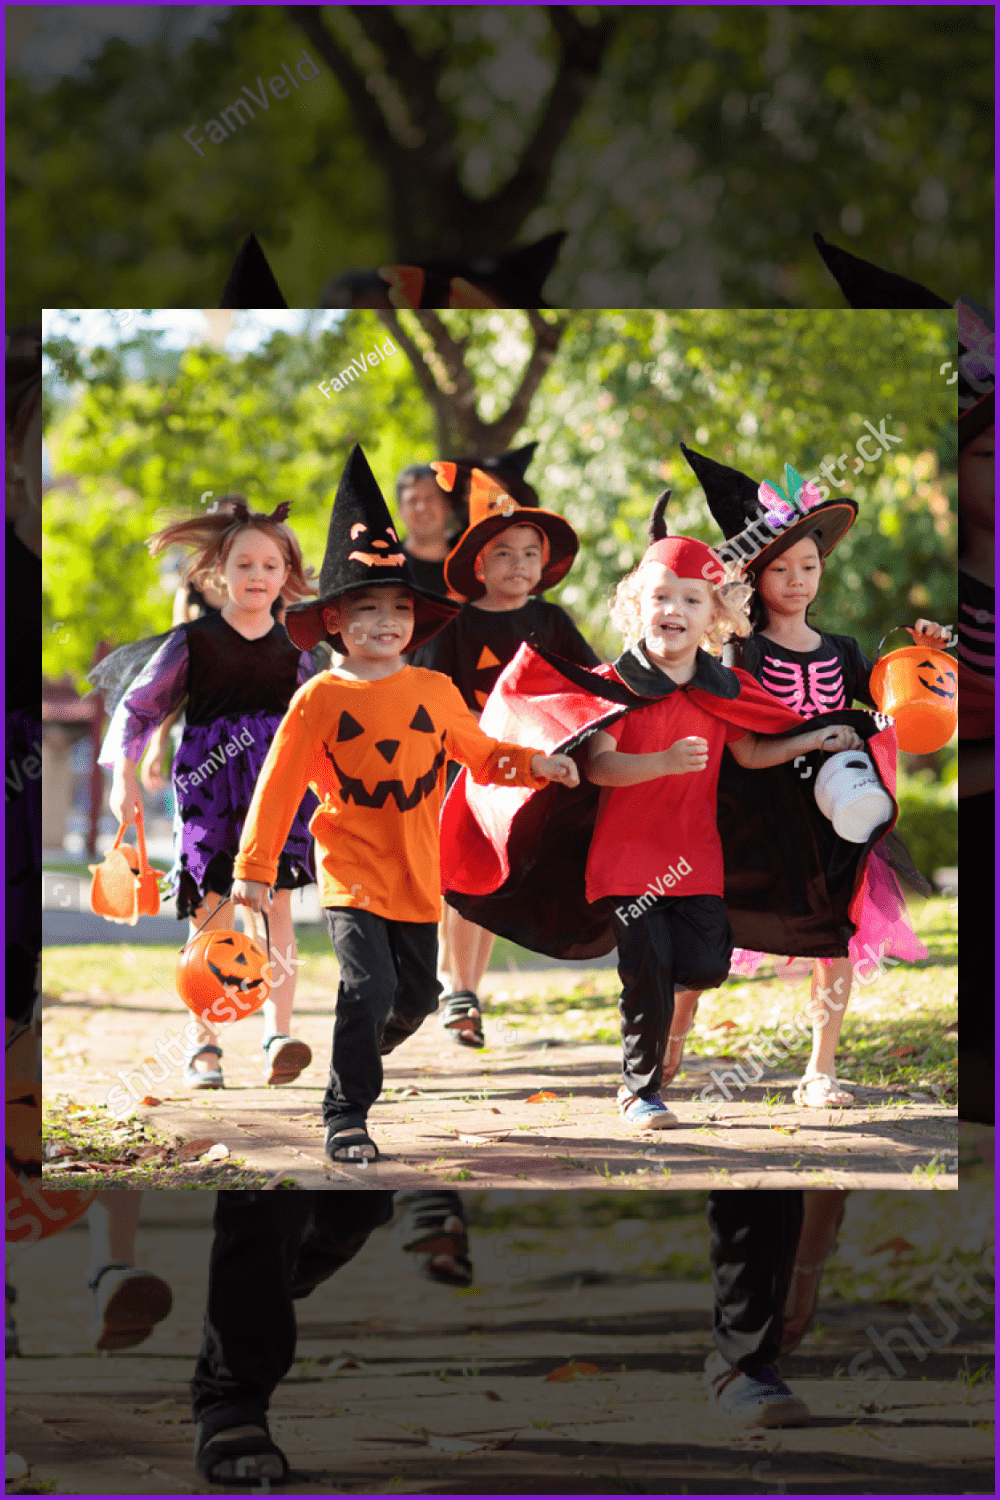 Photo of children in Halloween costumes.